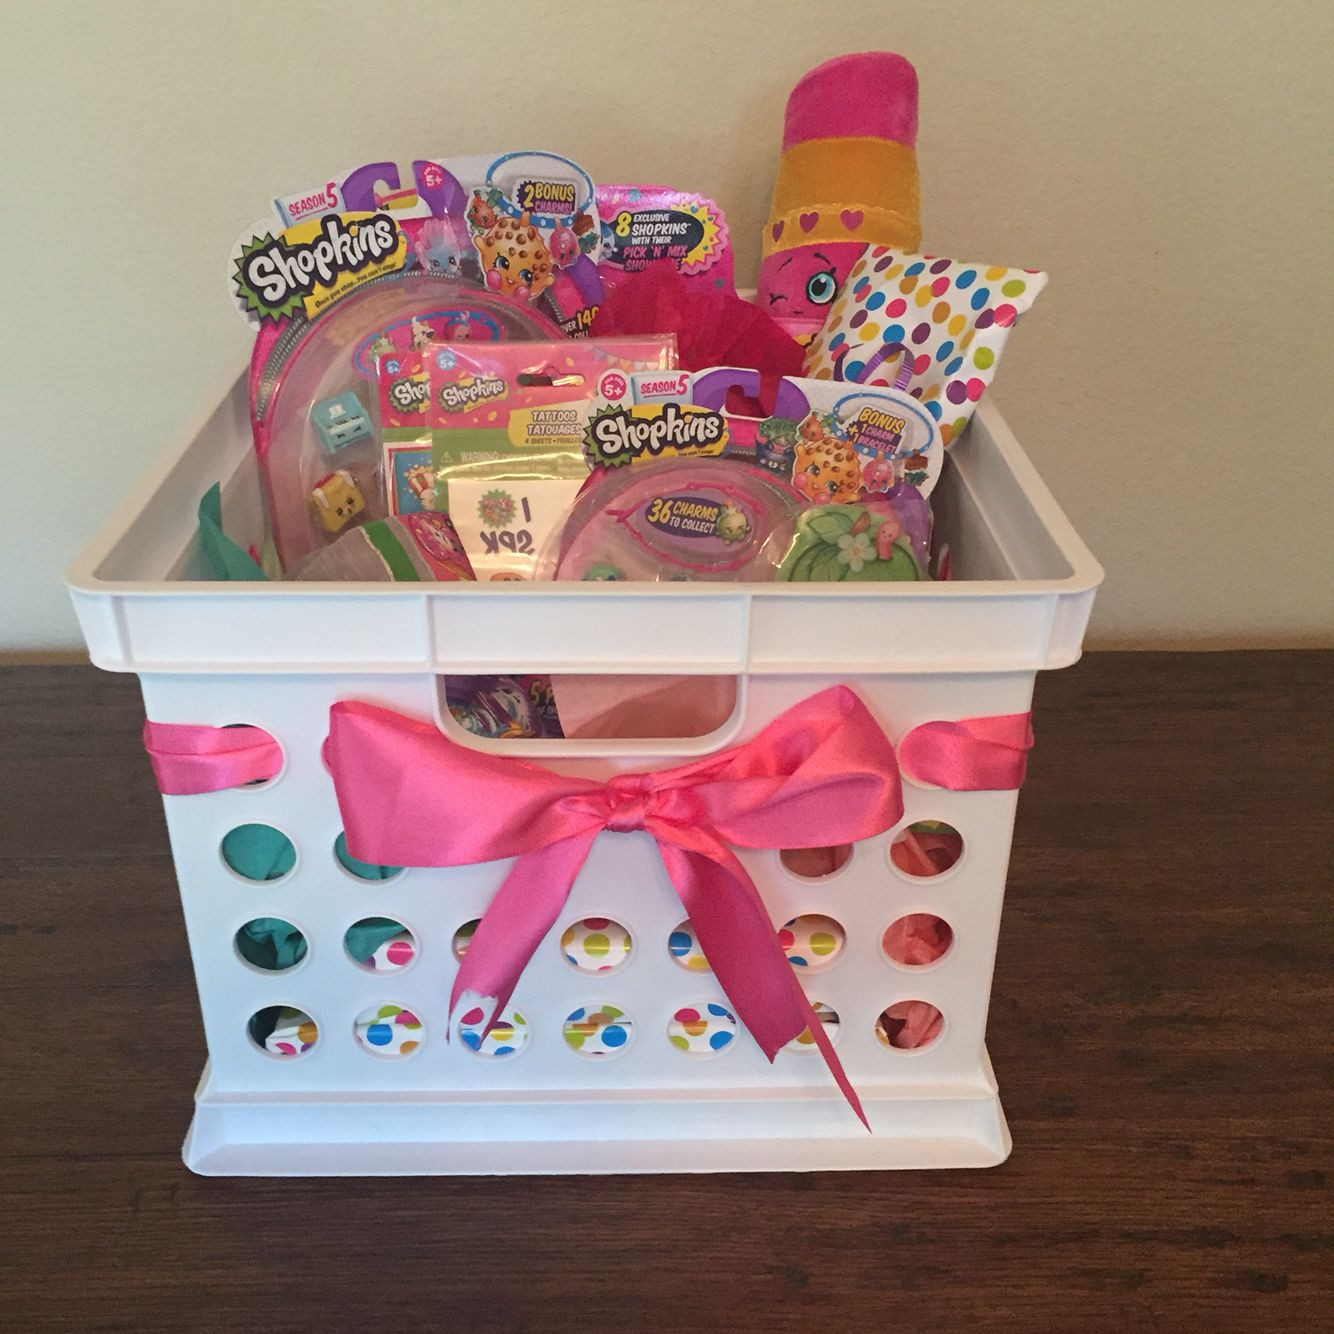 Child Birthday Gift Basket
 Shopkins Gift Basket